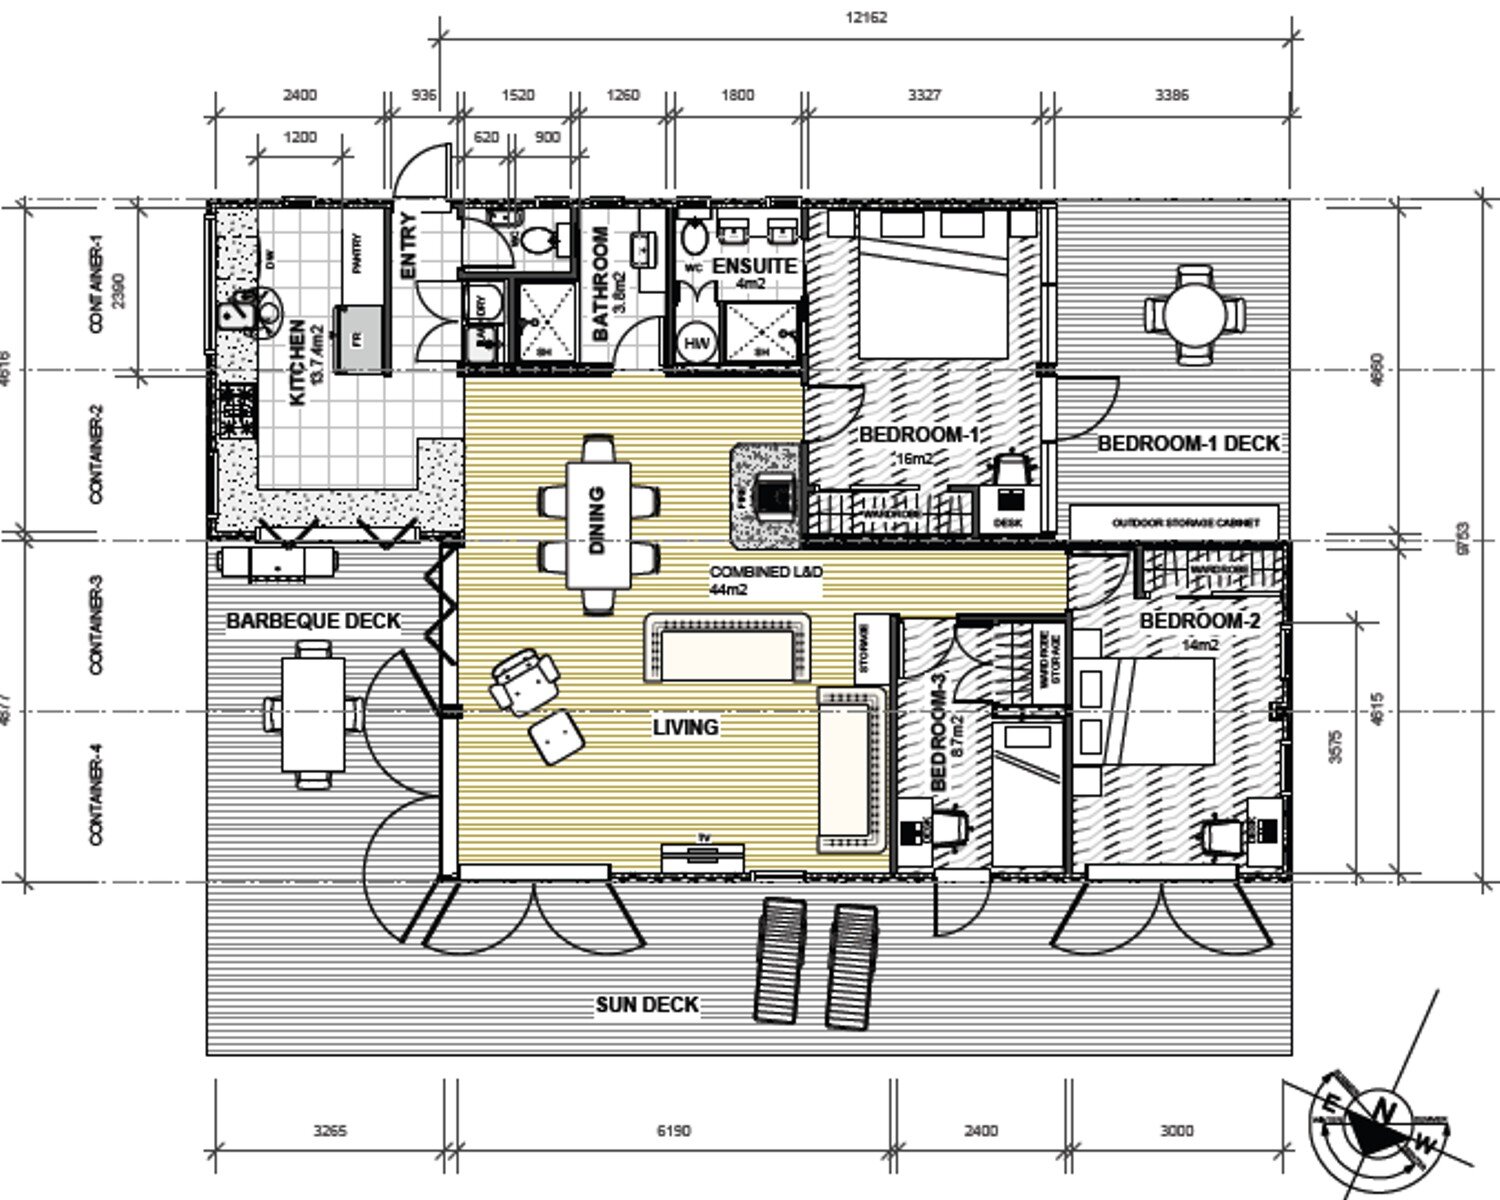  / / Floor plan layout option 